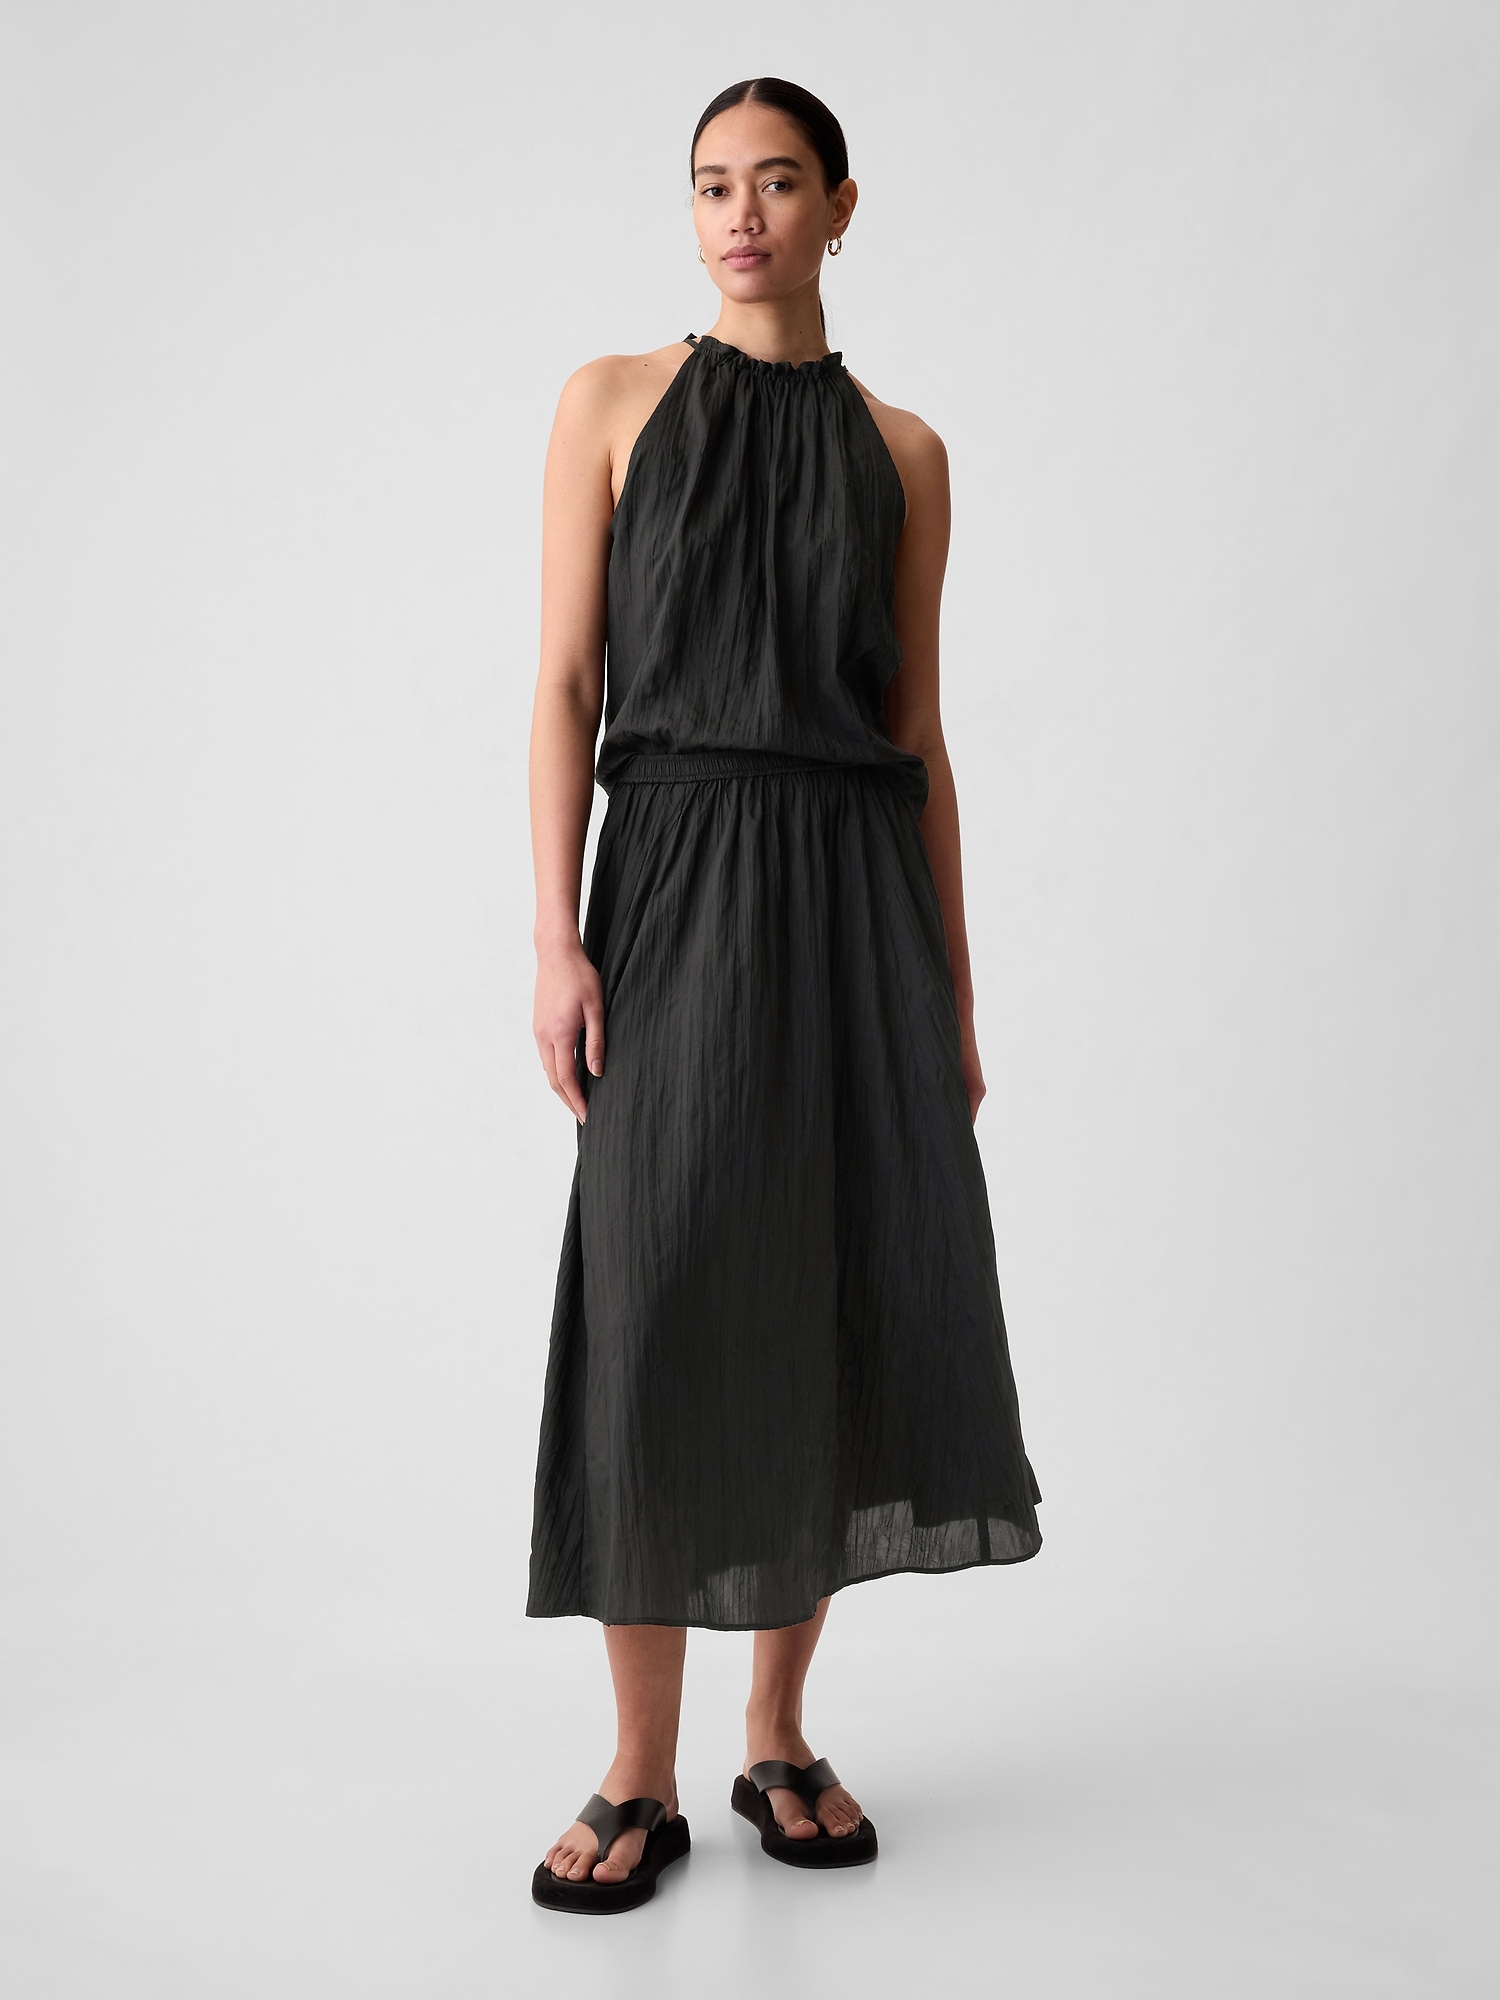 Textured Crinkle Pull-On Midi Skirt